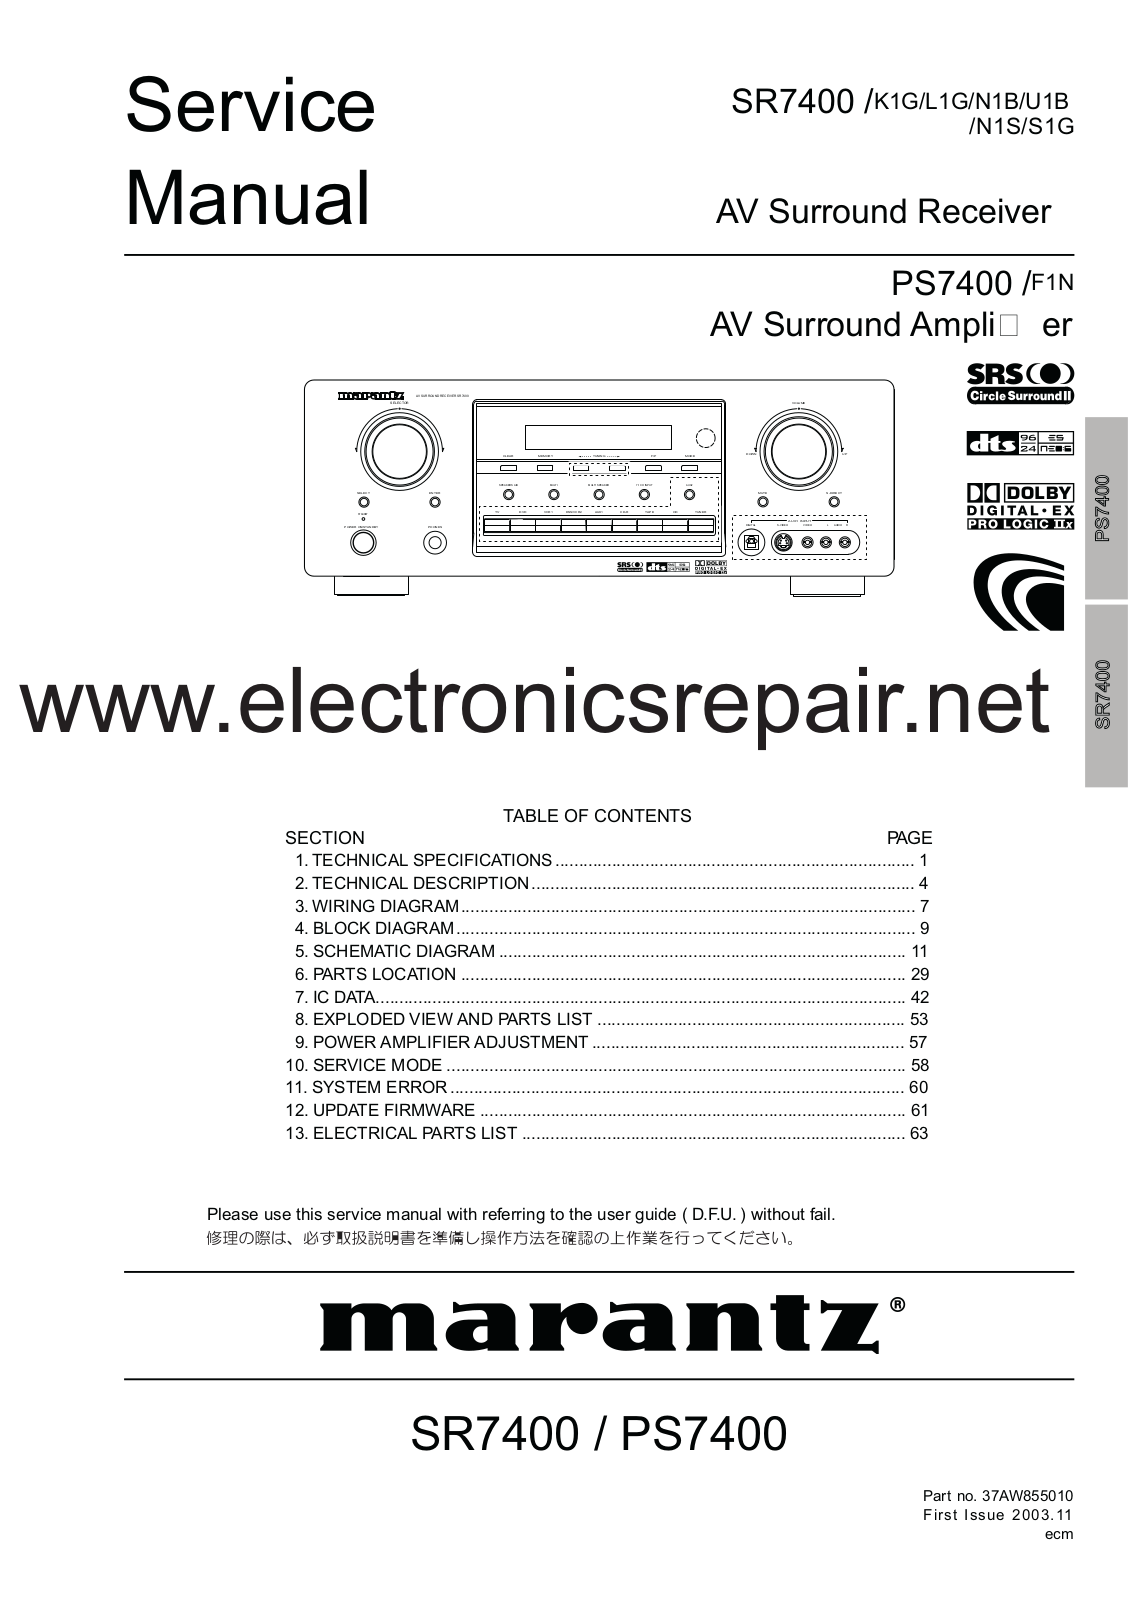 Marantz PS7400 Service Manual